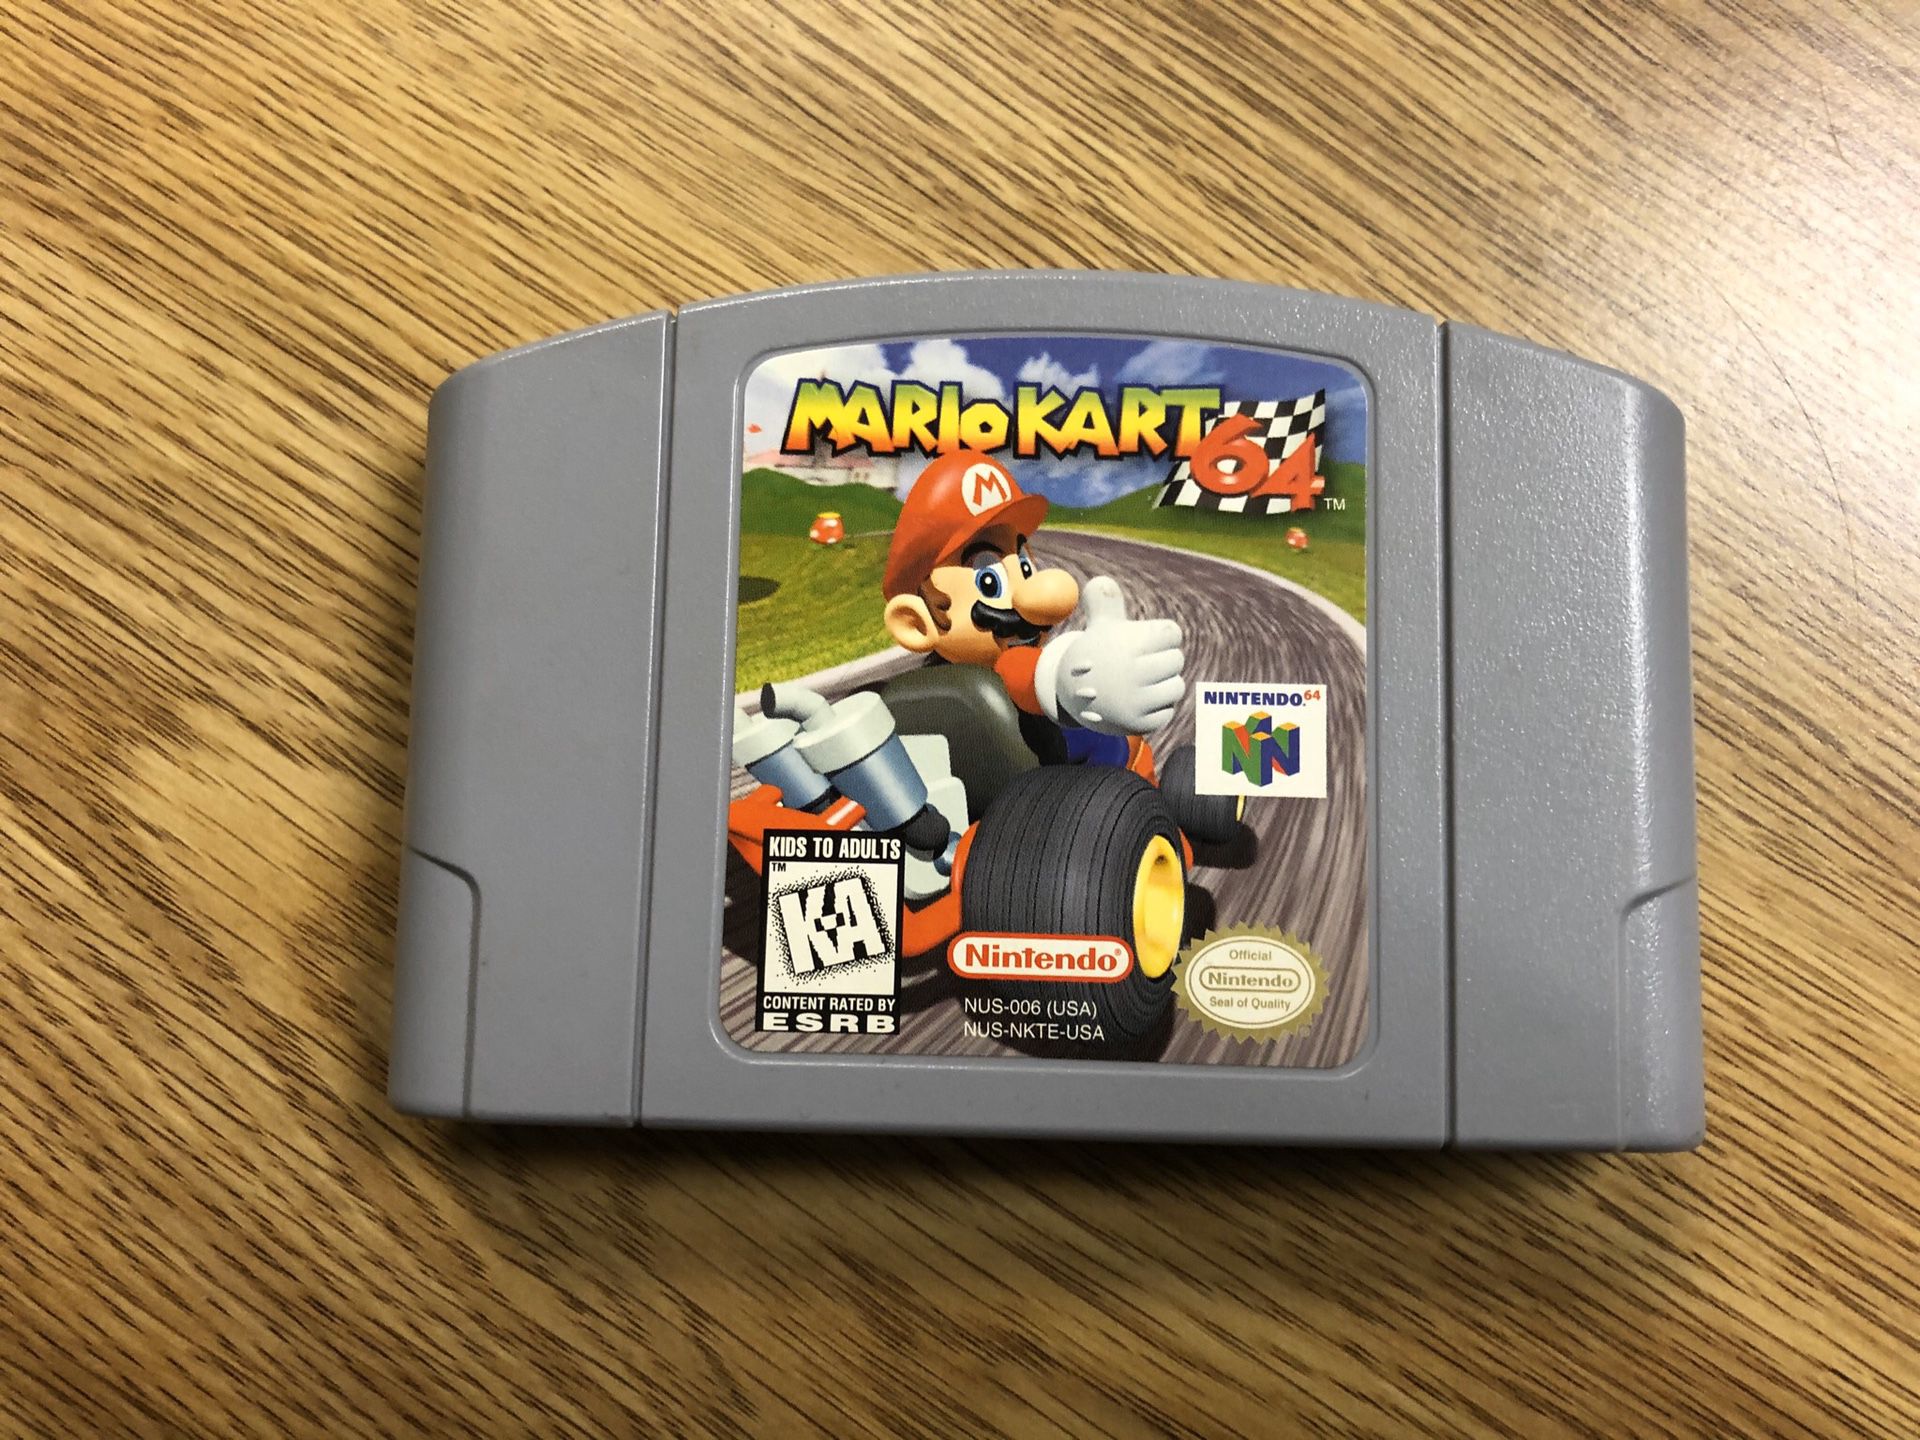 Nintendo 64 “Mario Kart 64” video game cartridge!